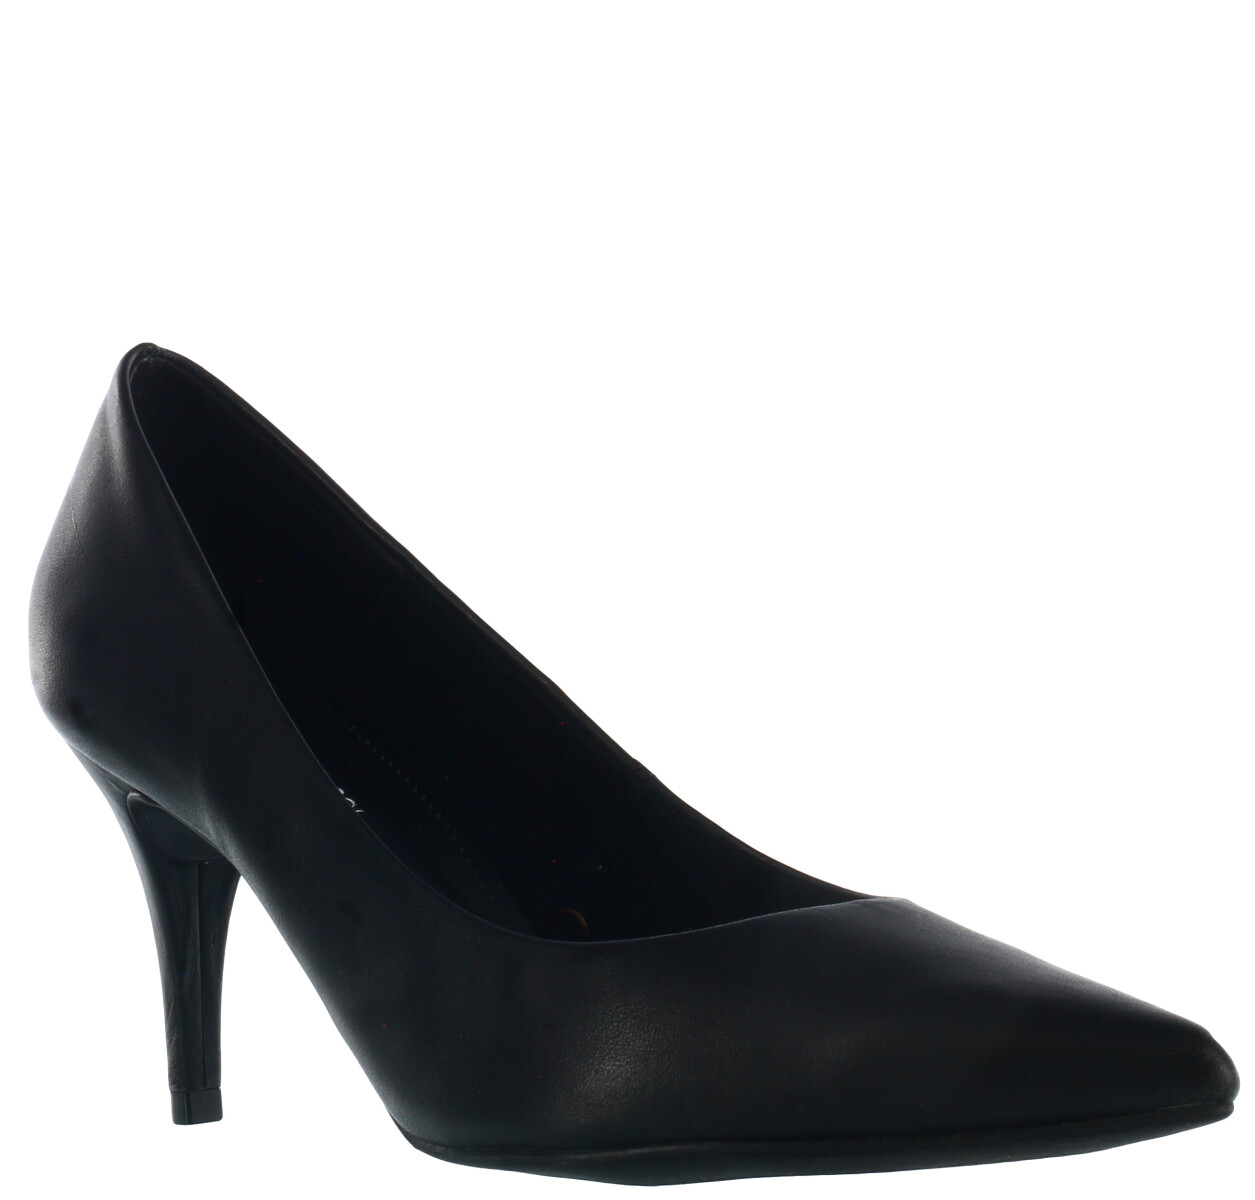 Zapato de Mujer Bottero clasico - Negro 